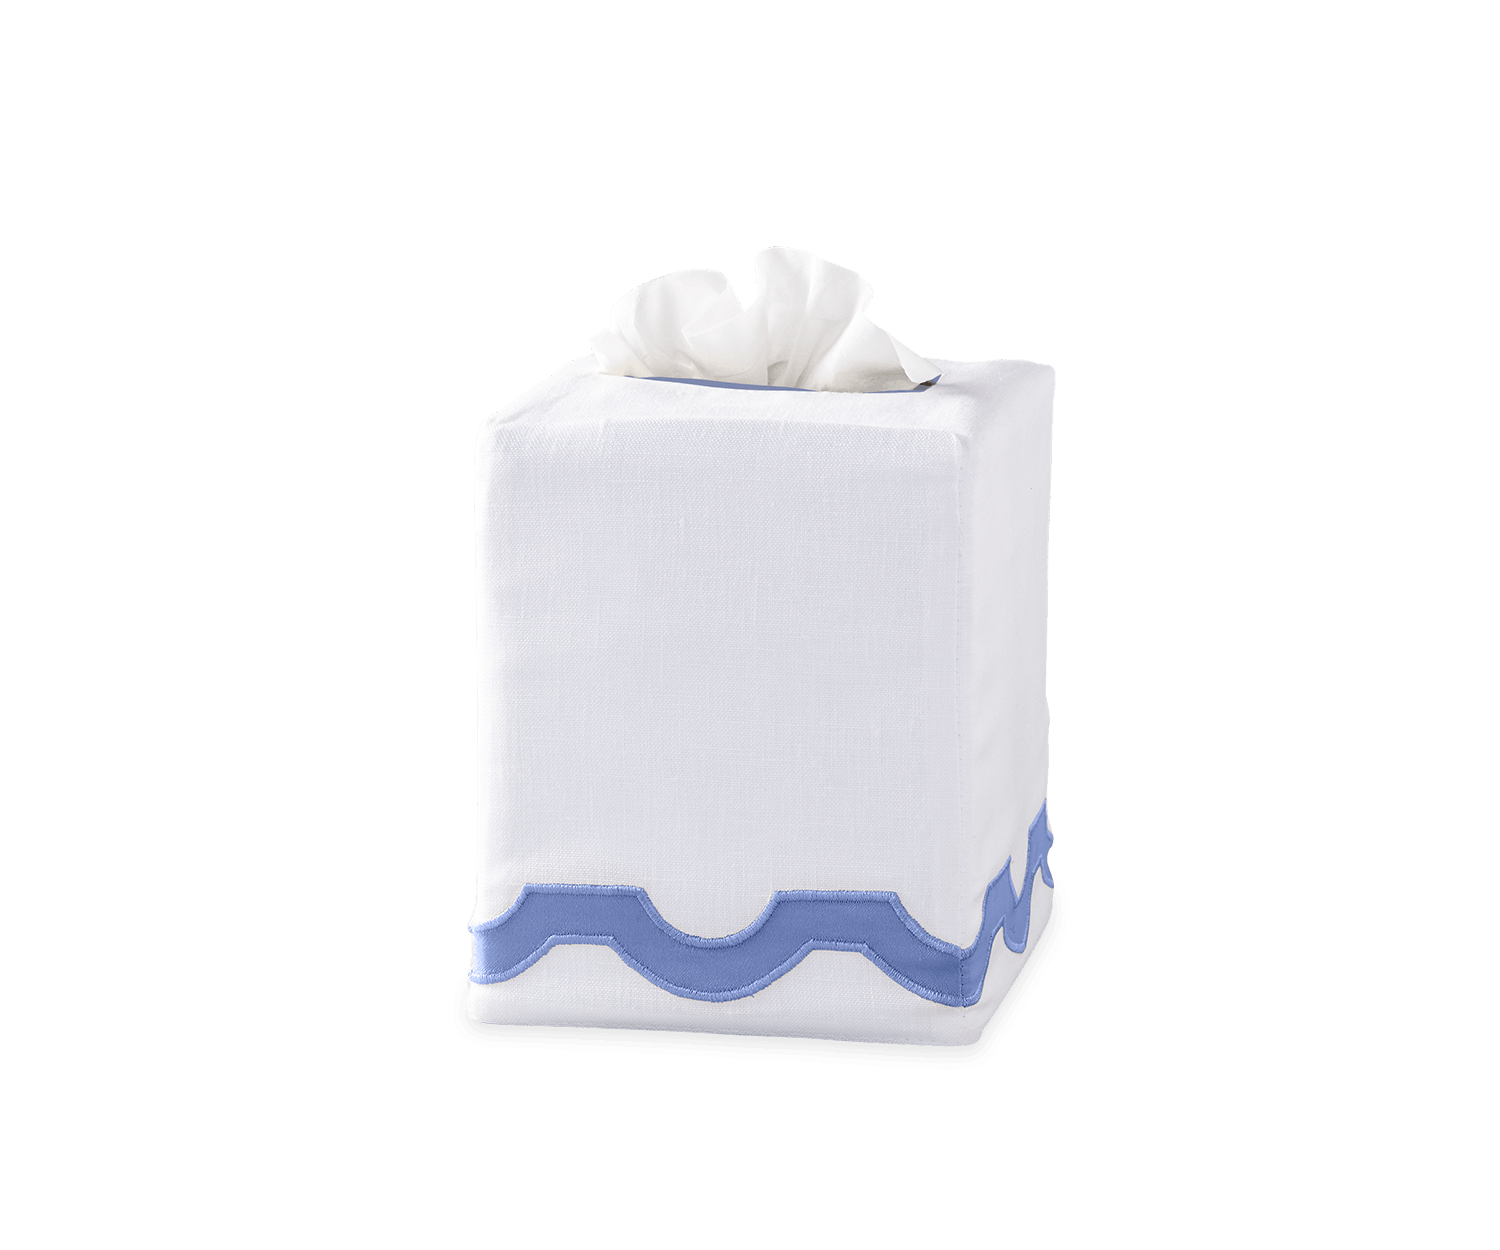 Linen Monogrammed Tissue Cover